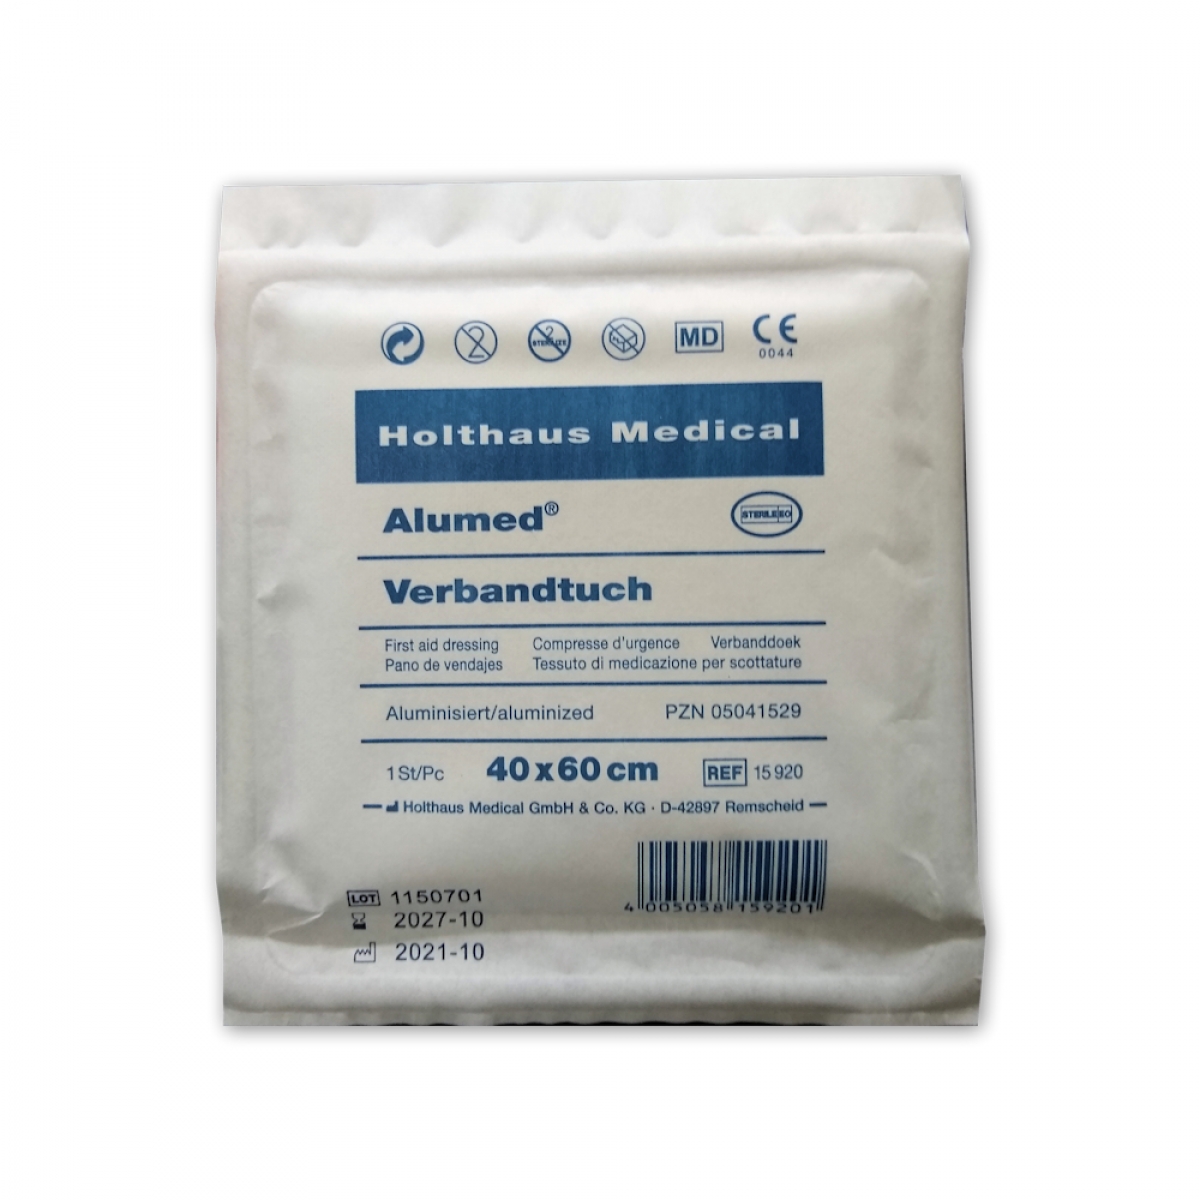 Holthaus Medical, Erste-Hilfe, Alumed Verbandtuch, 40 x 60cm